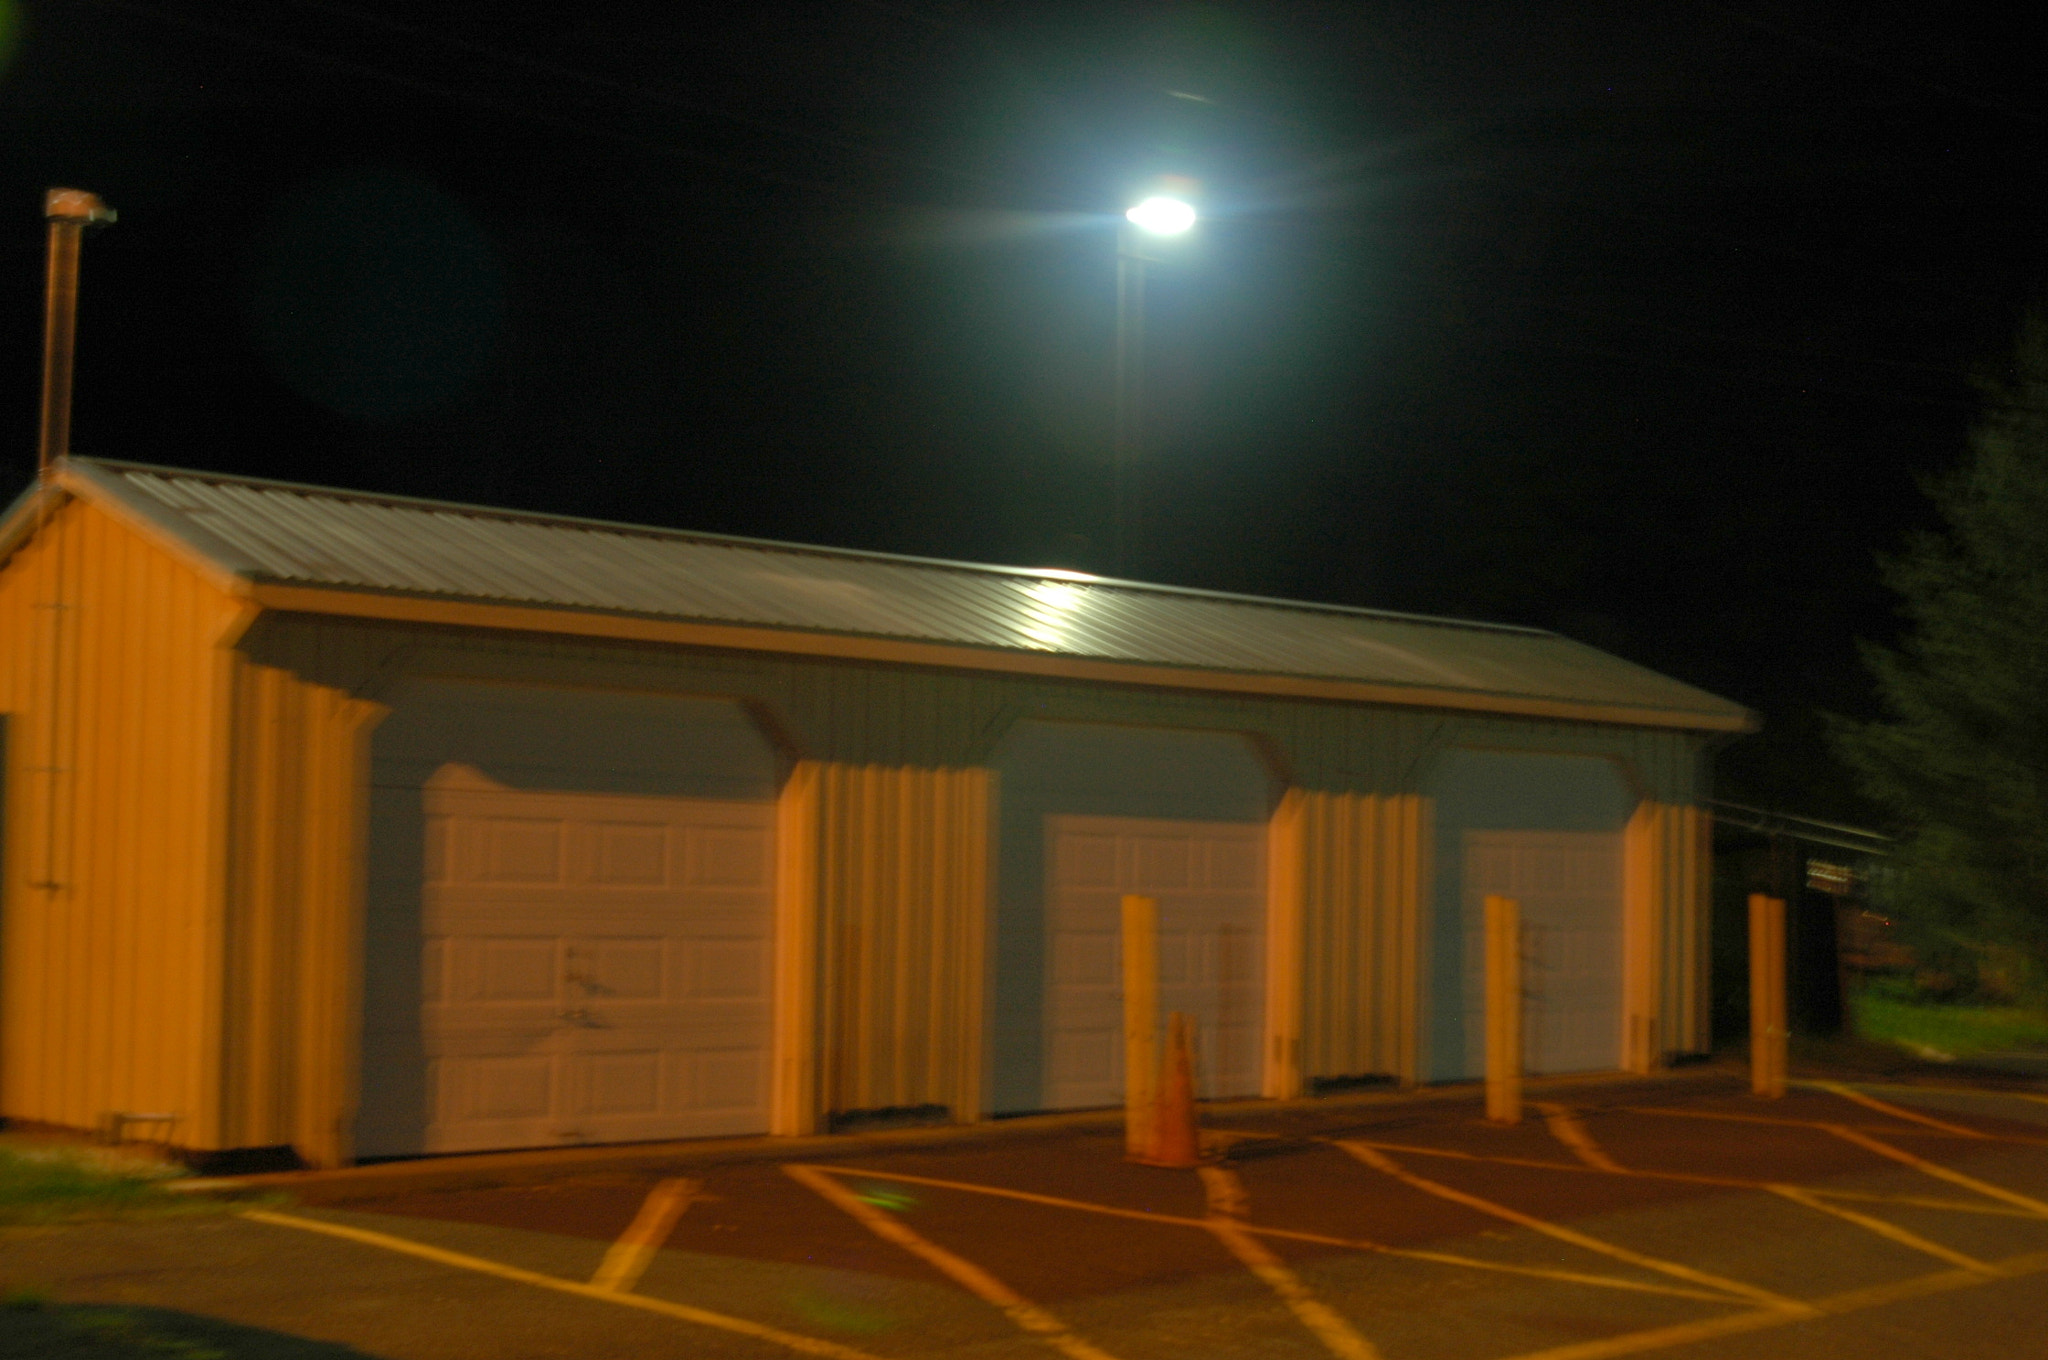 Nikon D70s + AF Zoom-Nikkor 24-120mm f/3.5-5.6D IF sample photo. Garage in night light photography